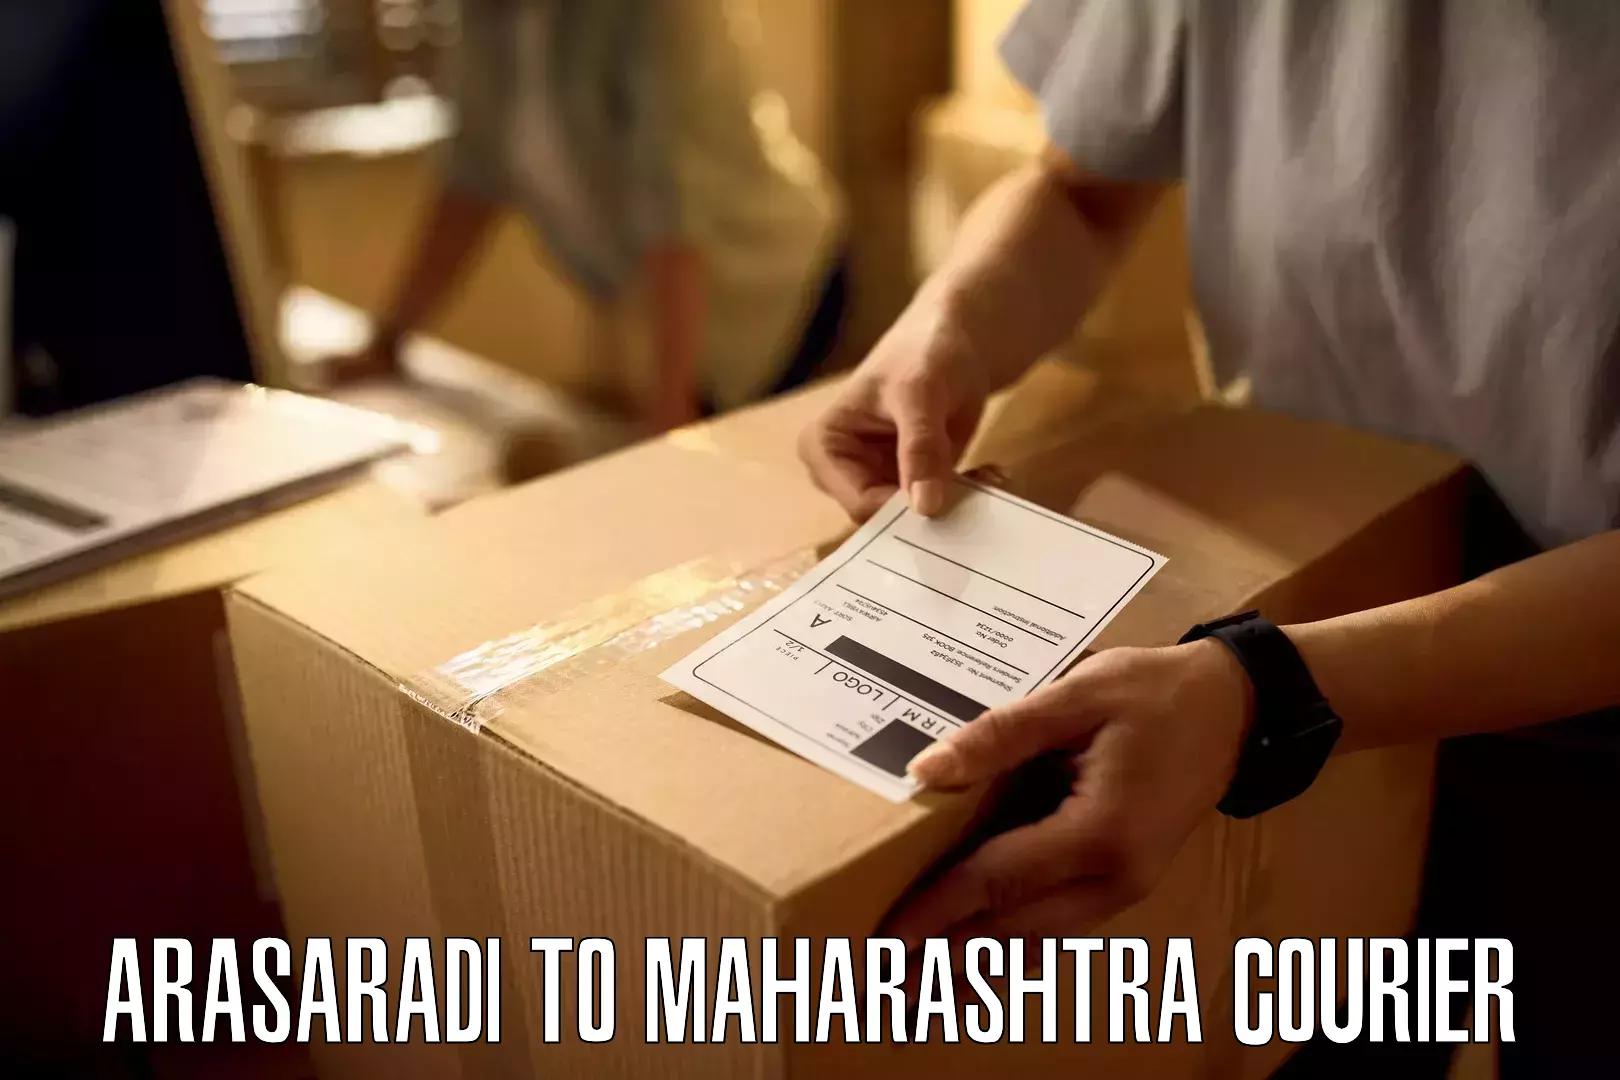 Express shipping Arasaradi to Maharashtra